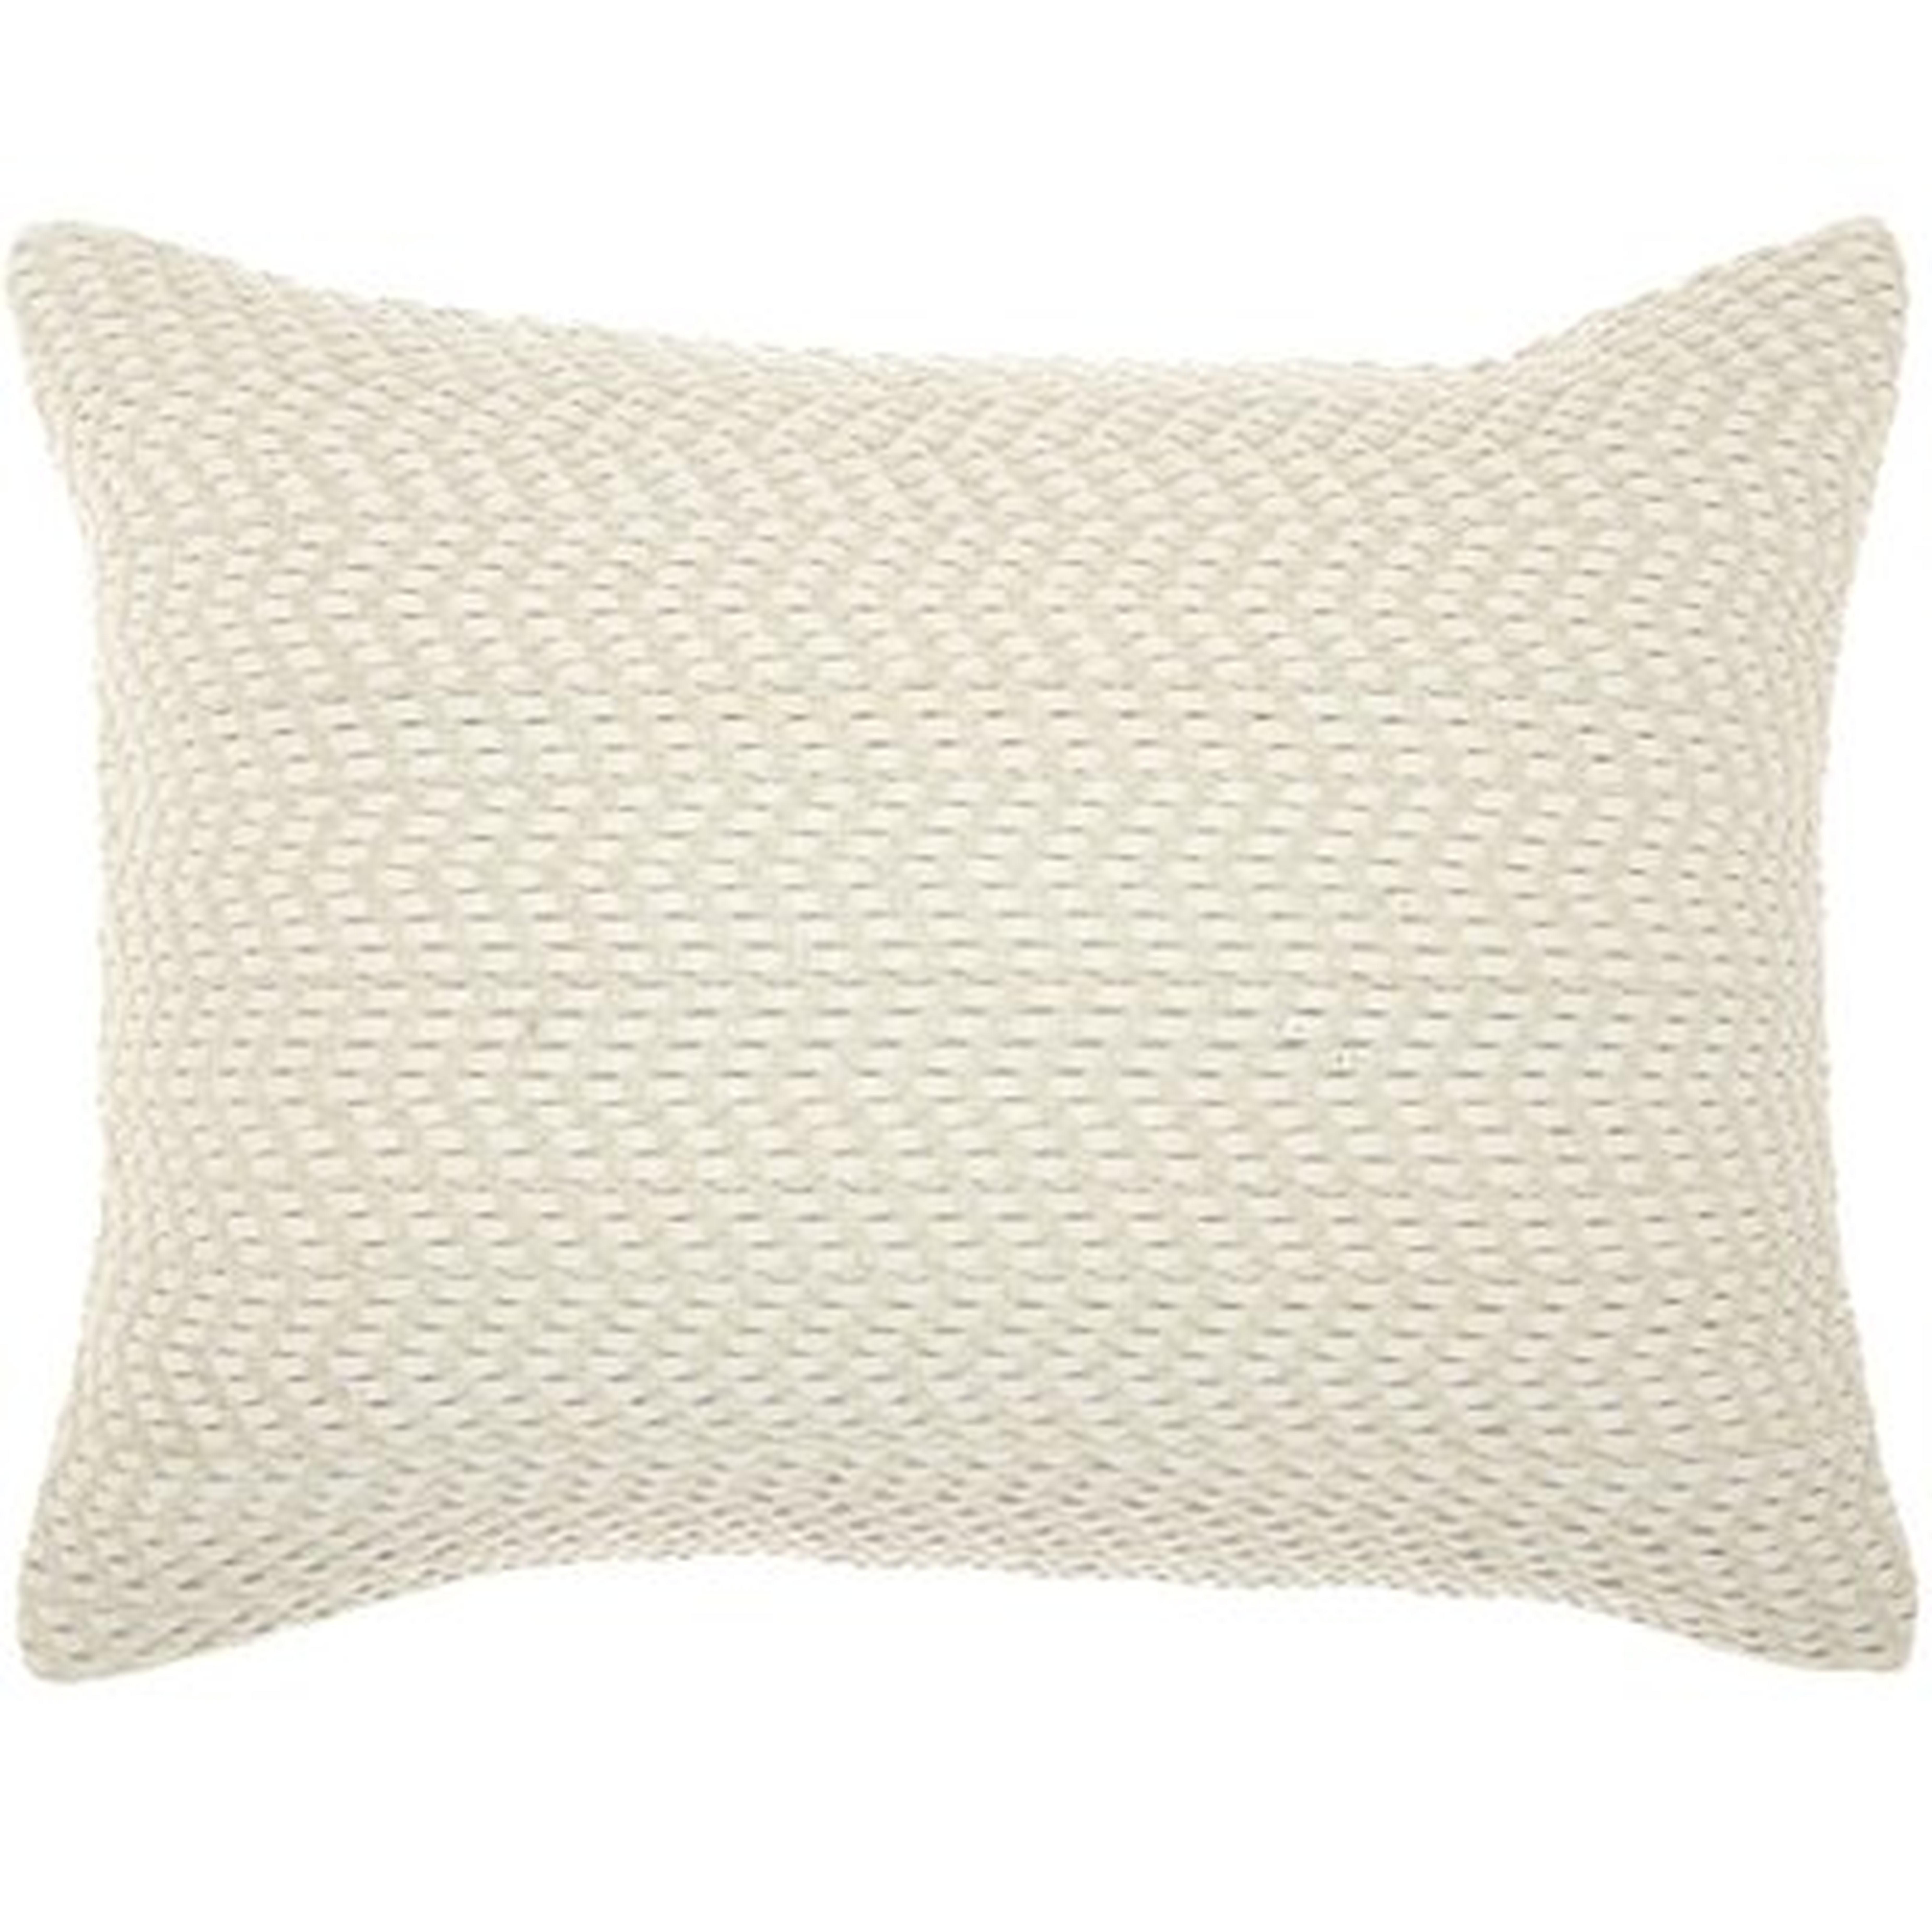 Leather Lumbar Pillow - Wayfair